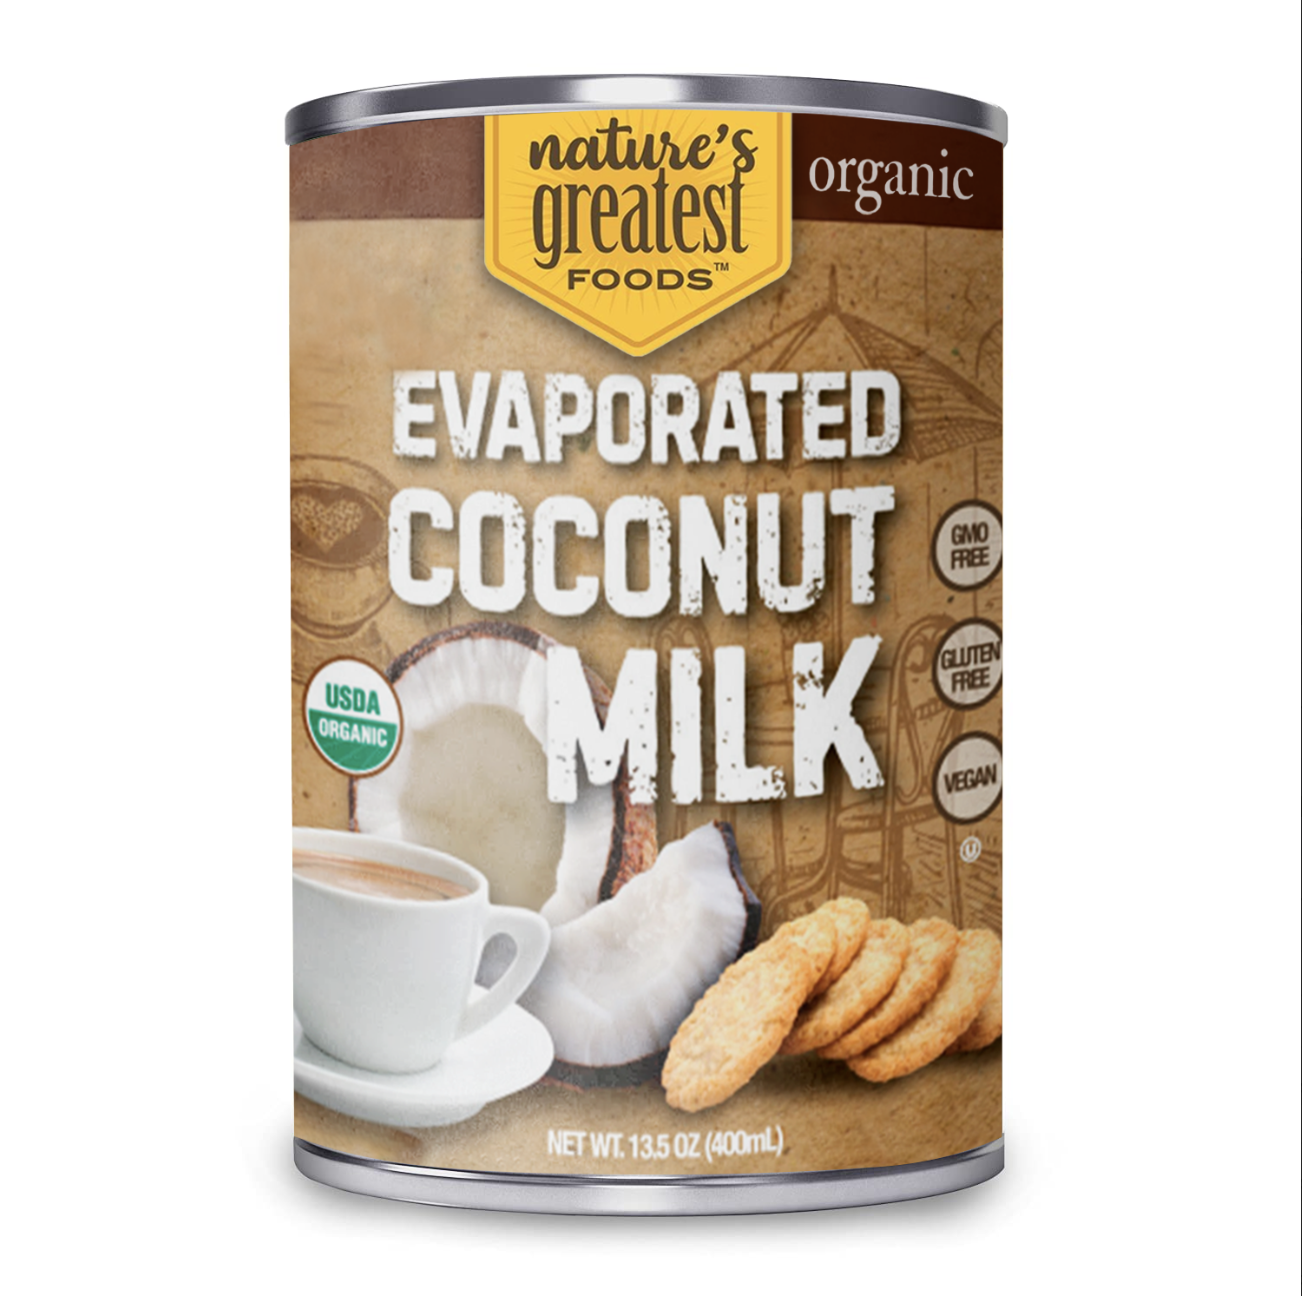 Nature's Greatest Foods Organic Evaporated Coconut Milk 12 units per case 13.5 oz